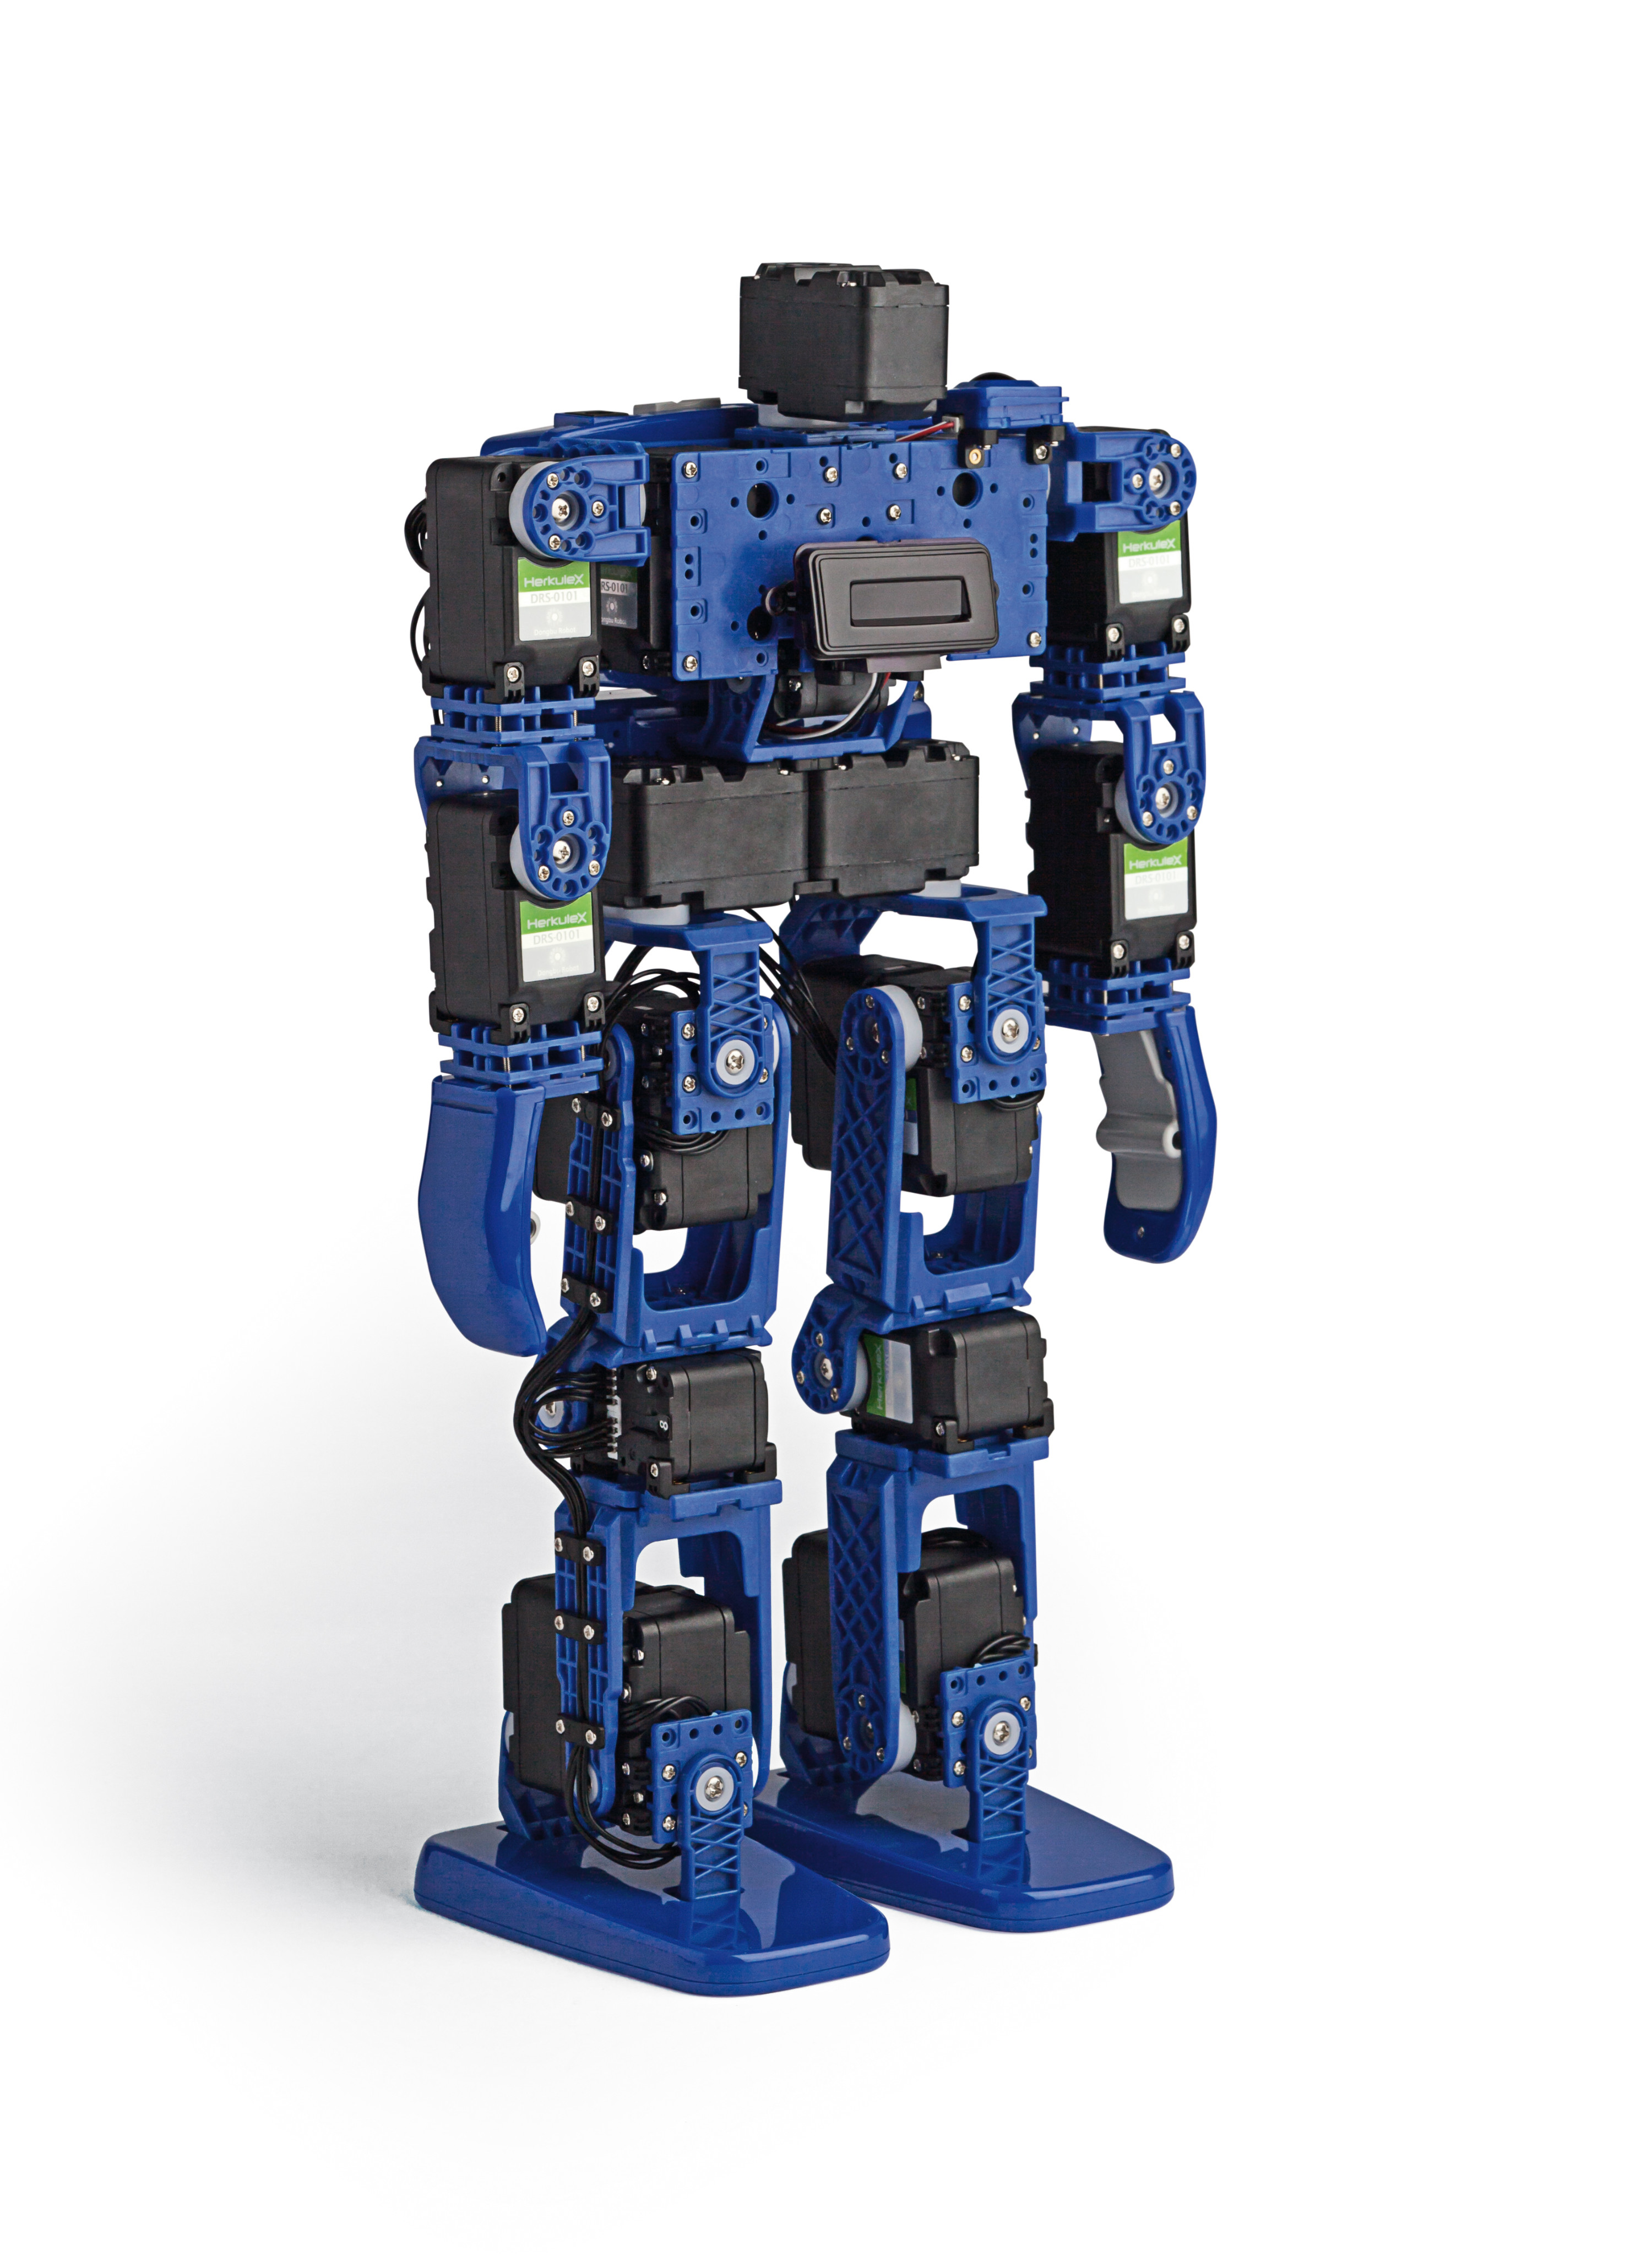 Die Roboter der Baureihe Hovis Lite erfreuen sich bei Bastlern großer Beliebtheit Bild: Dongbu Robot